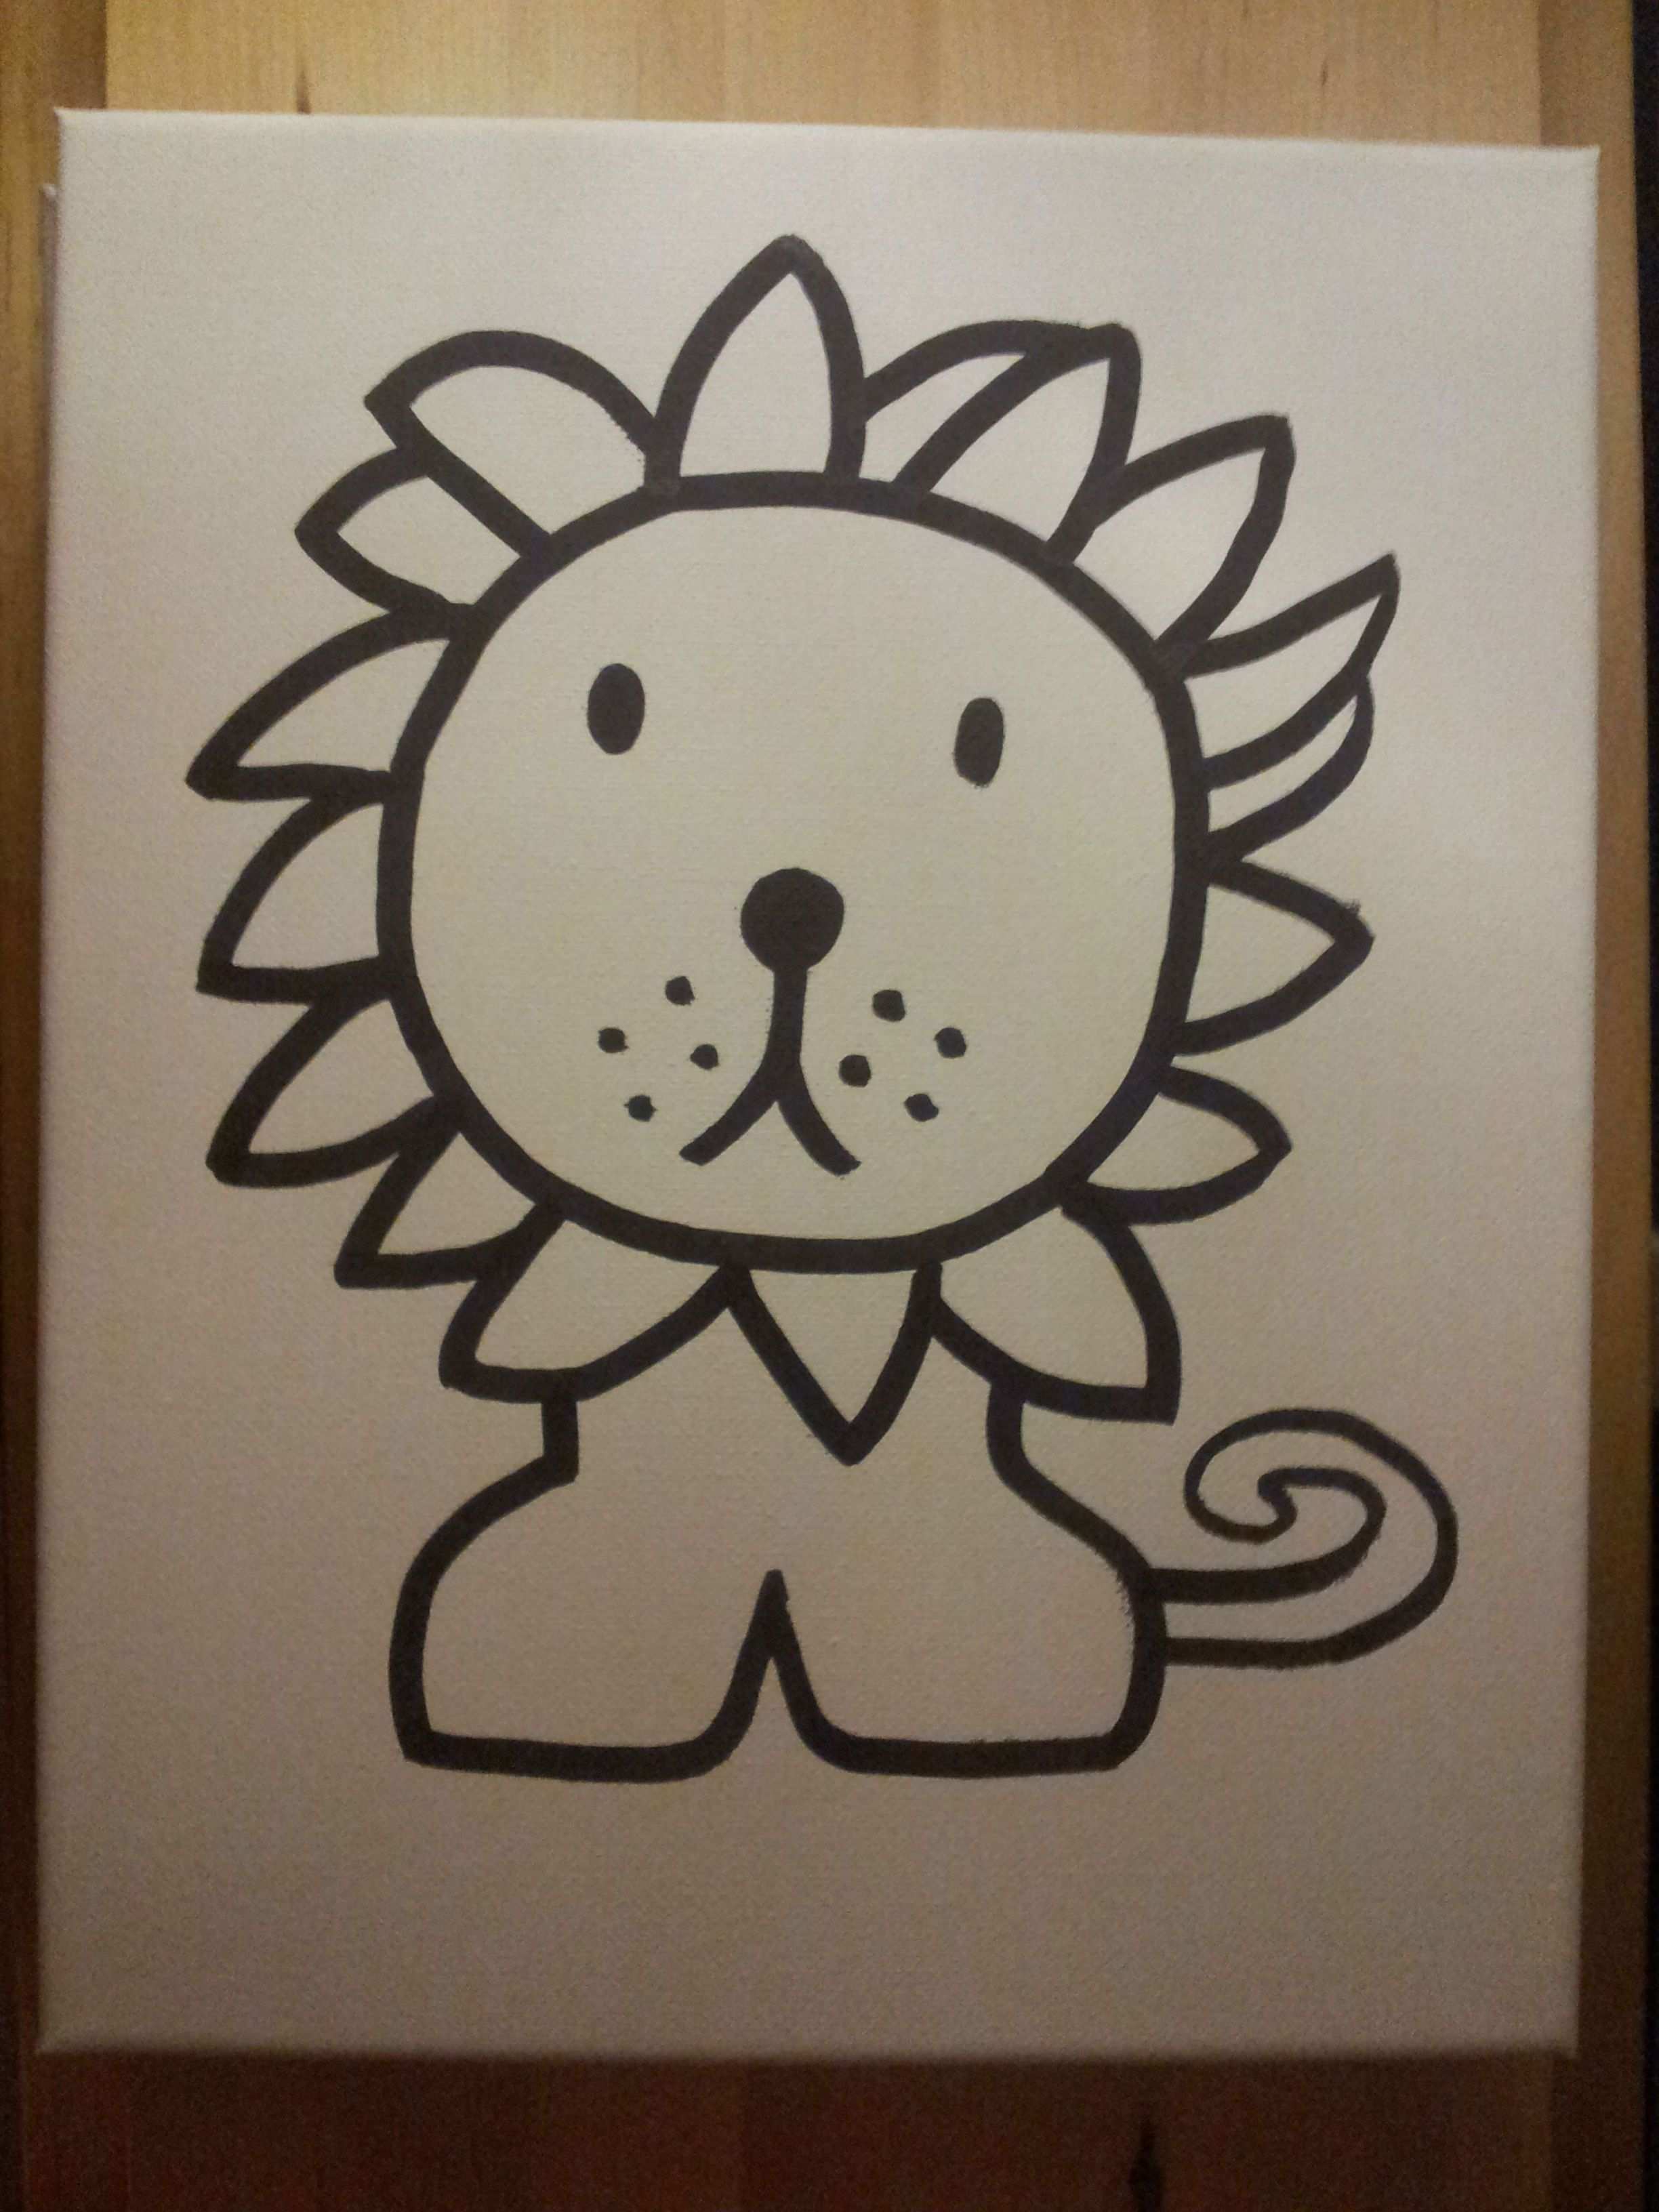 Leeuw Nijntje Lion Miffy Afbeelding Op A4 Geprint En